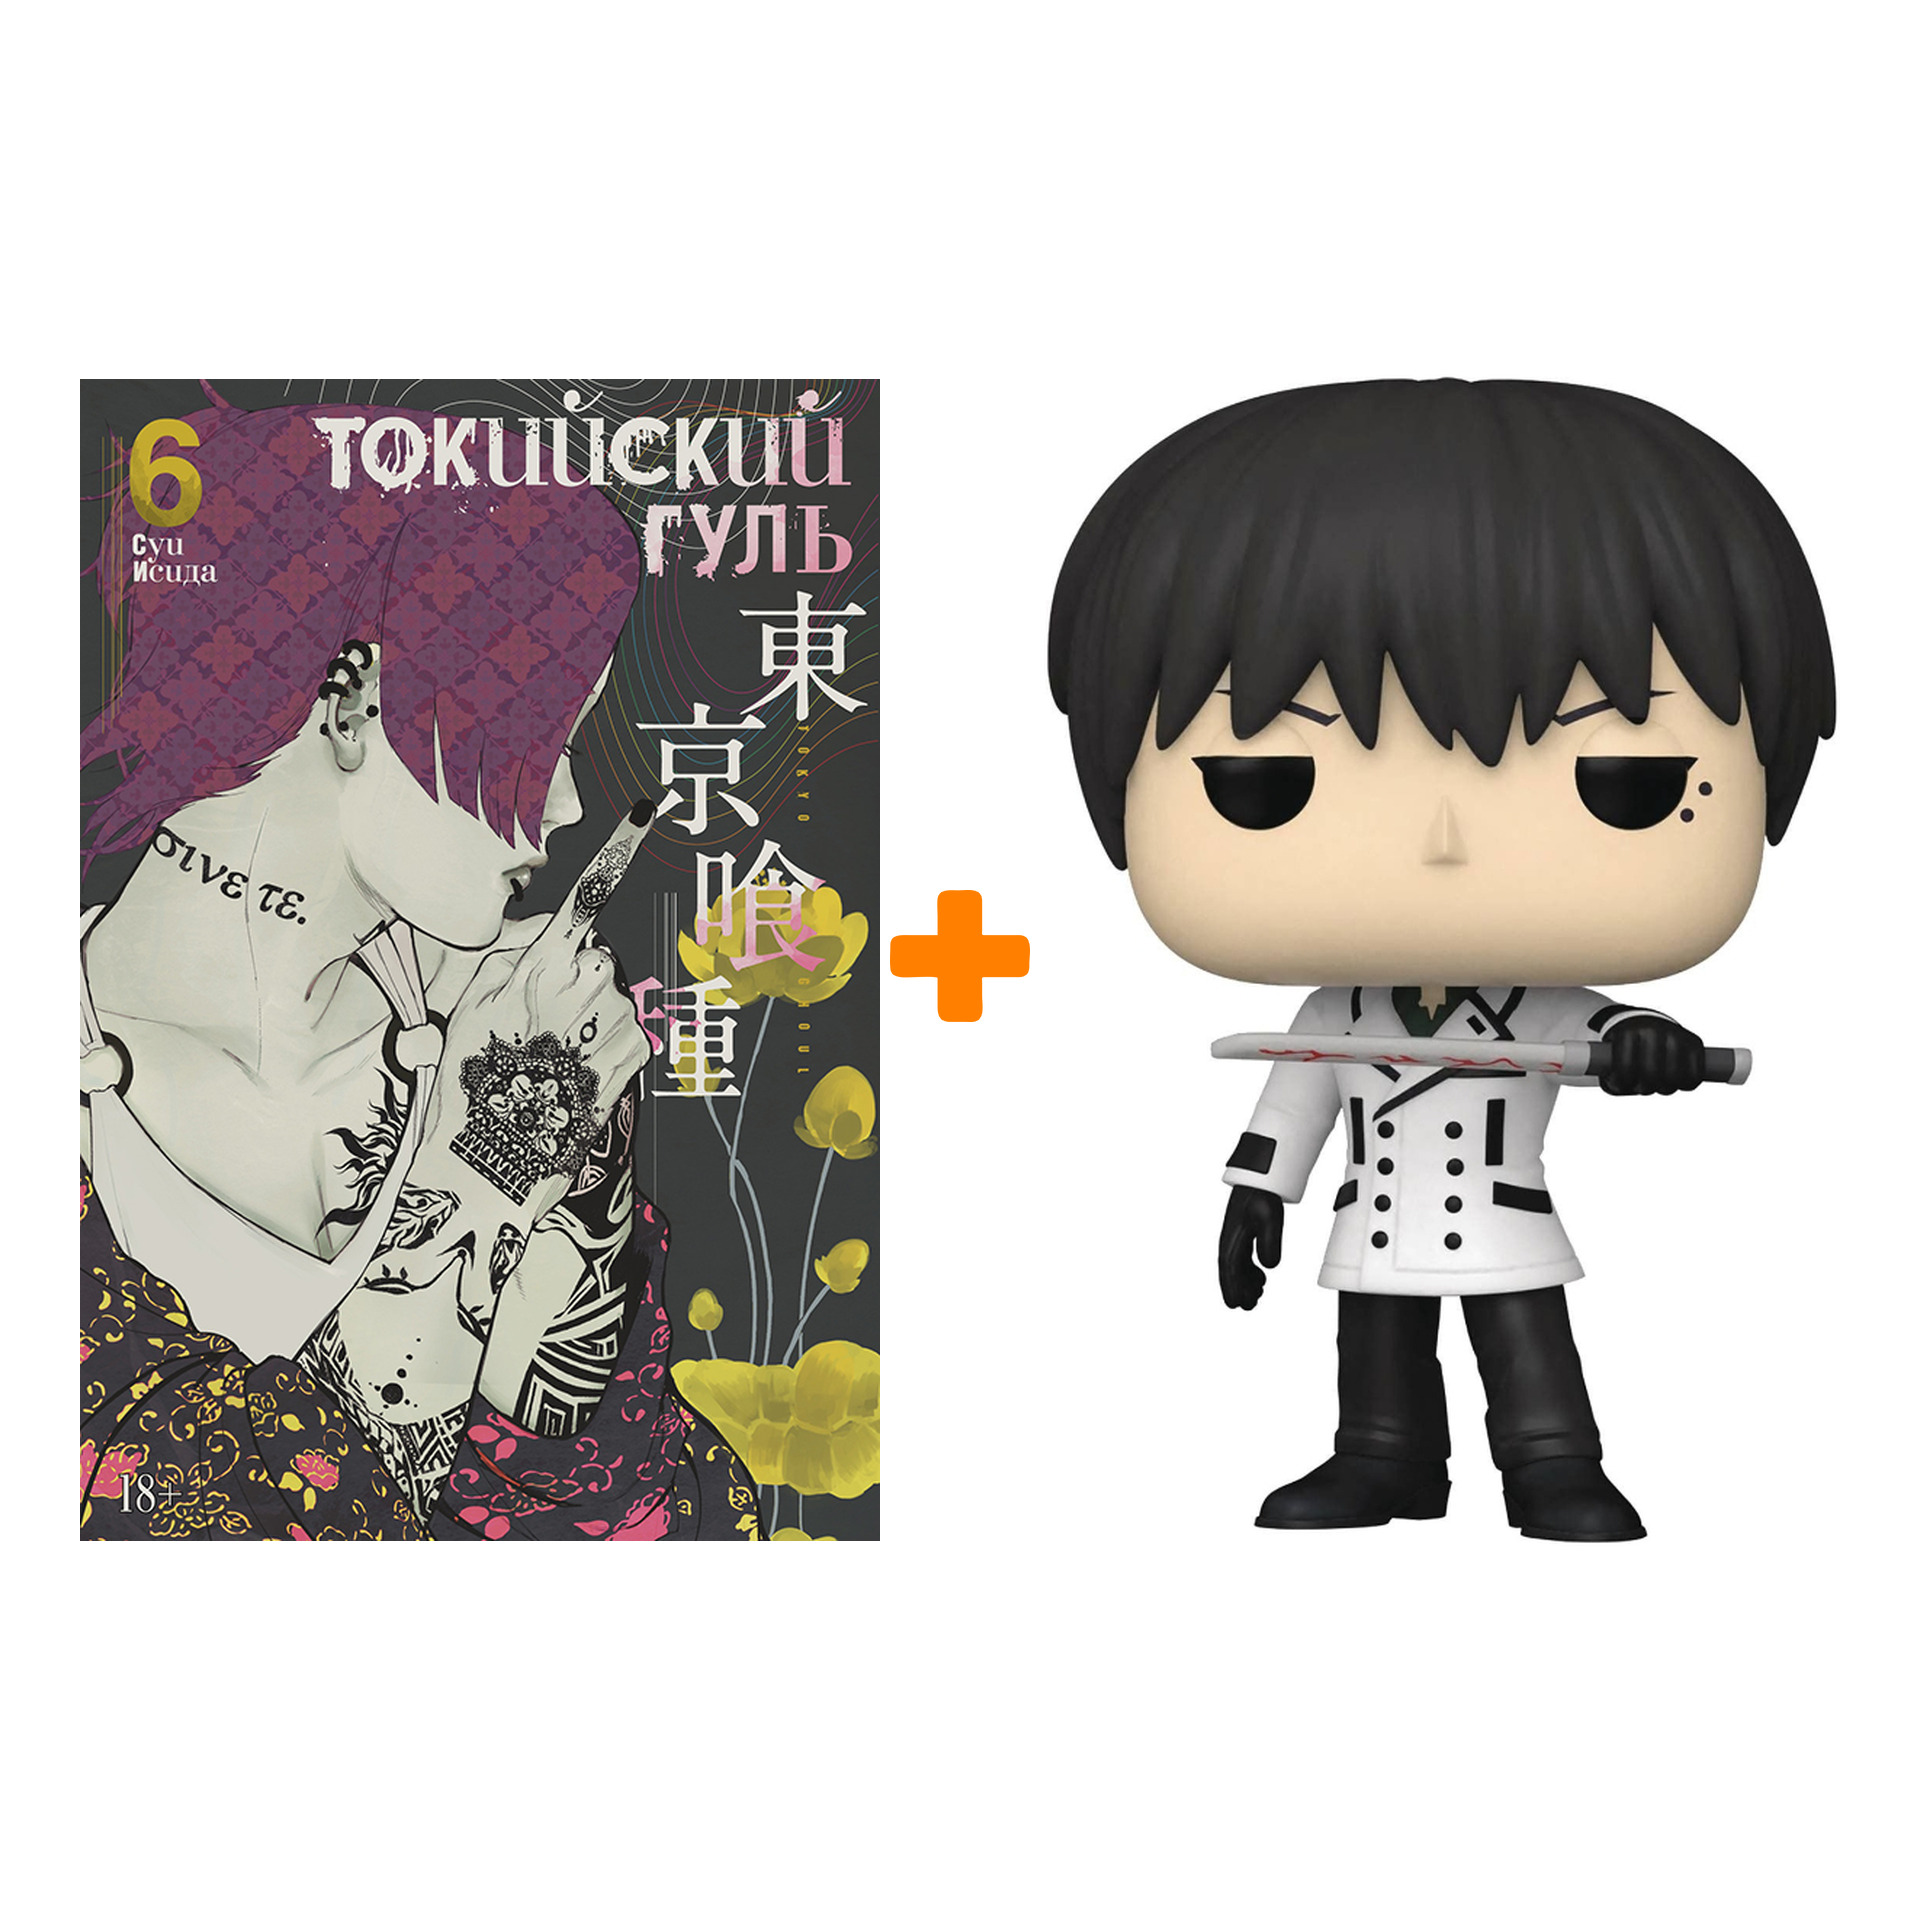 Набор Tokyo Ghoul фигурка Kuki Urie + манга Токийский гуль Книга 6